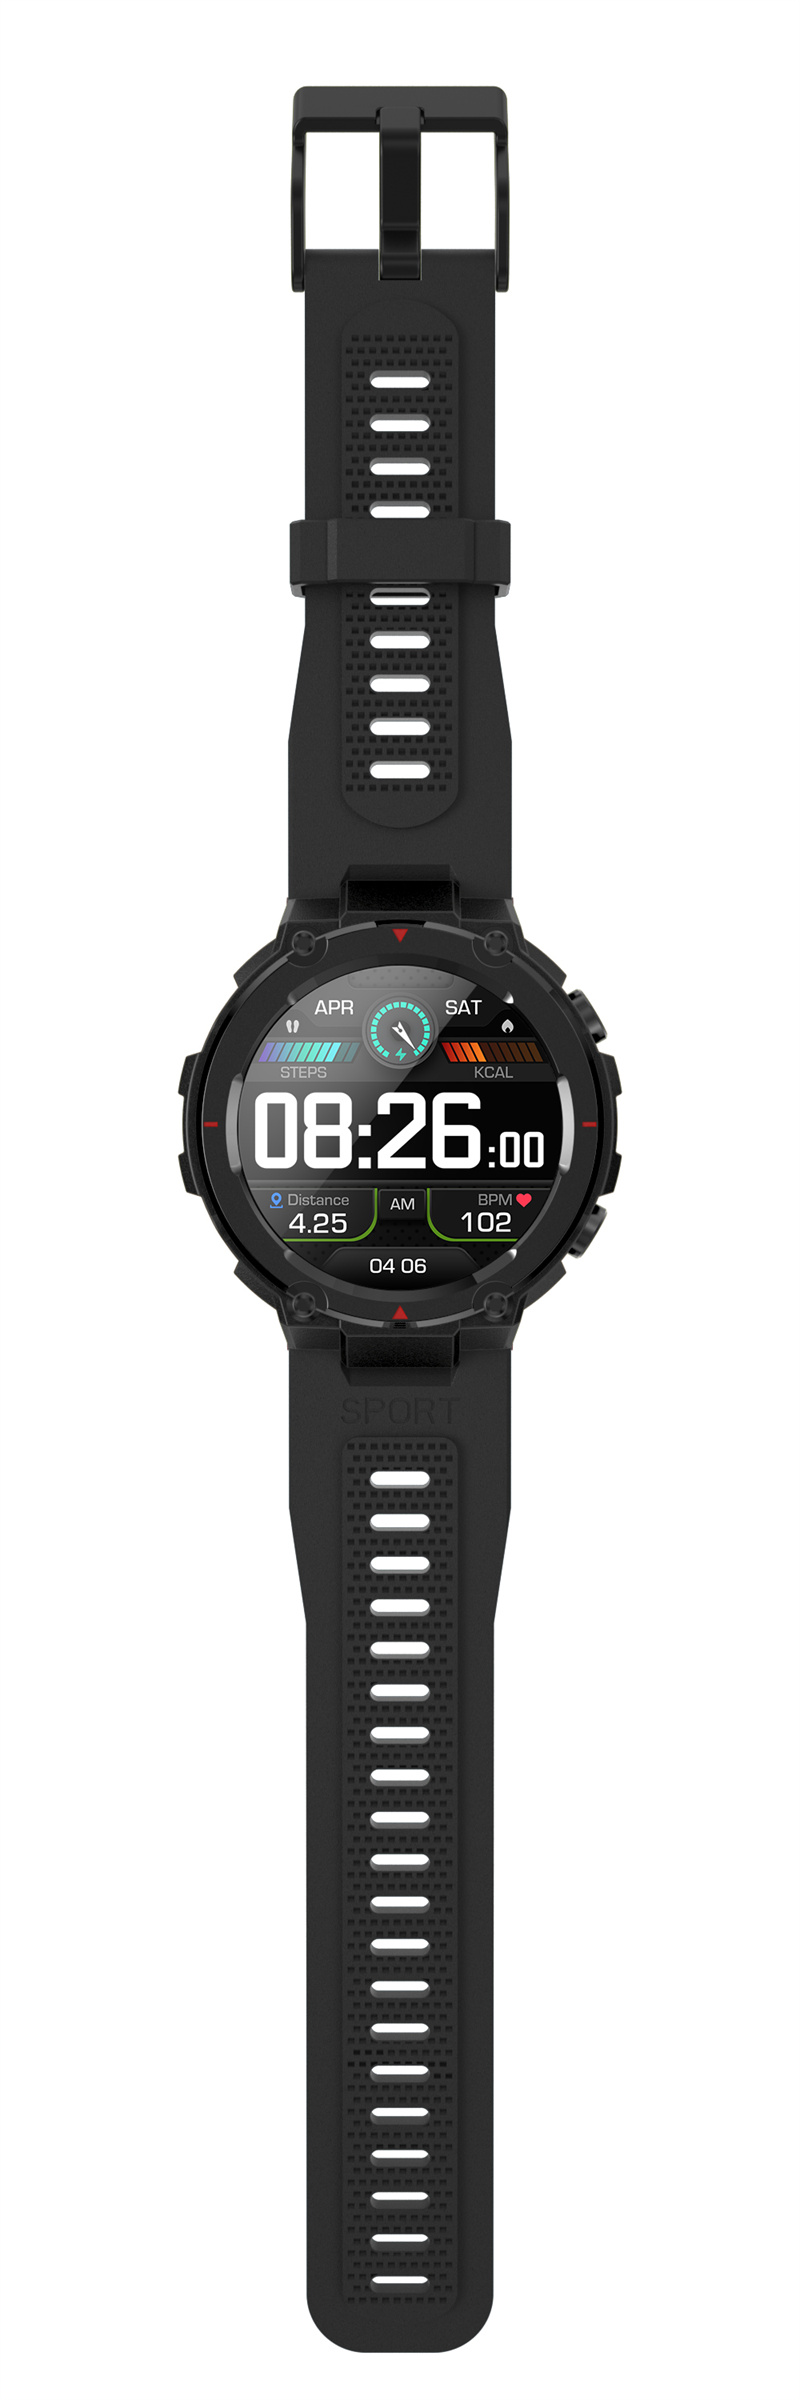 MRG-2 1.32inch GPS Watch